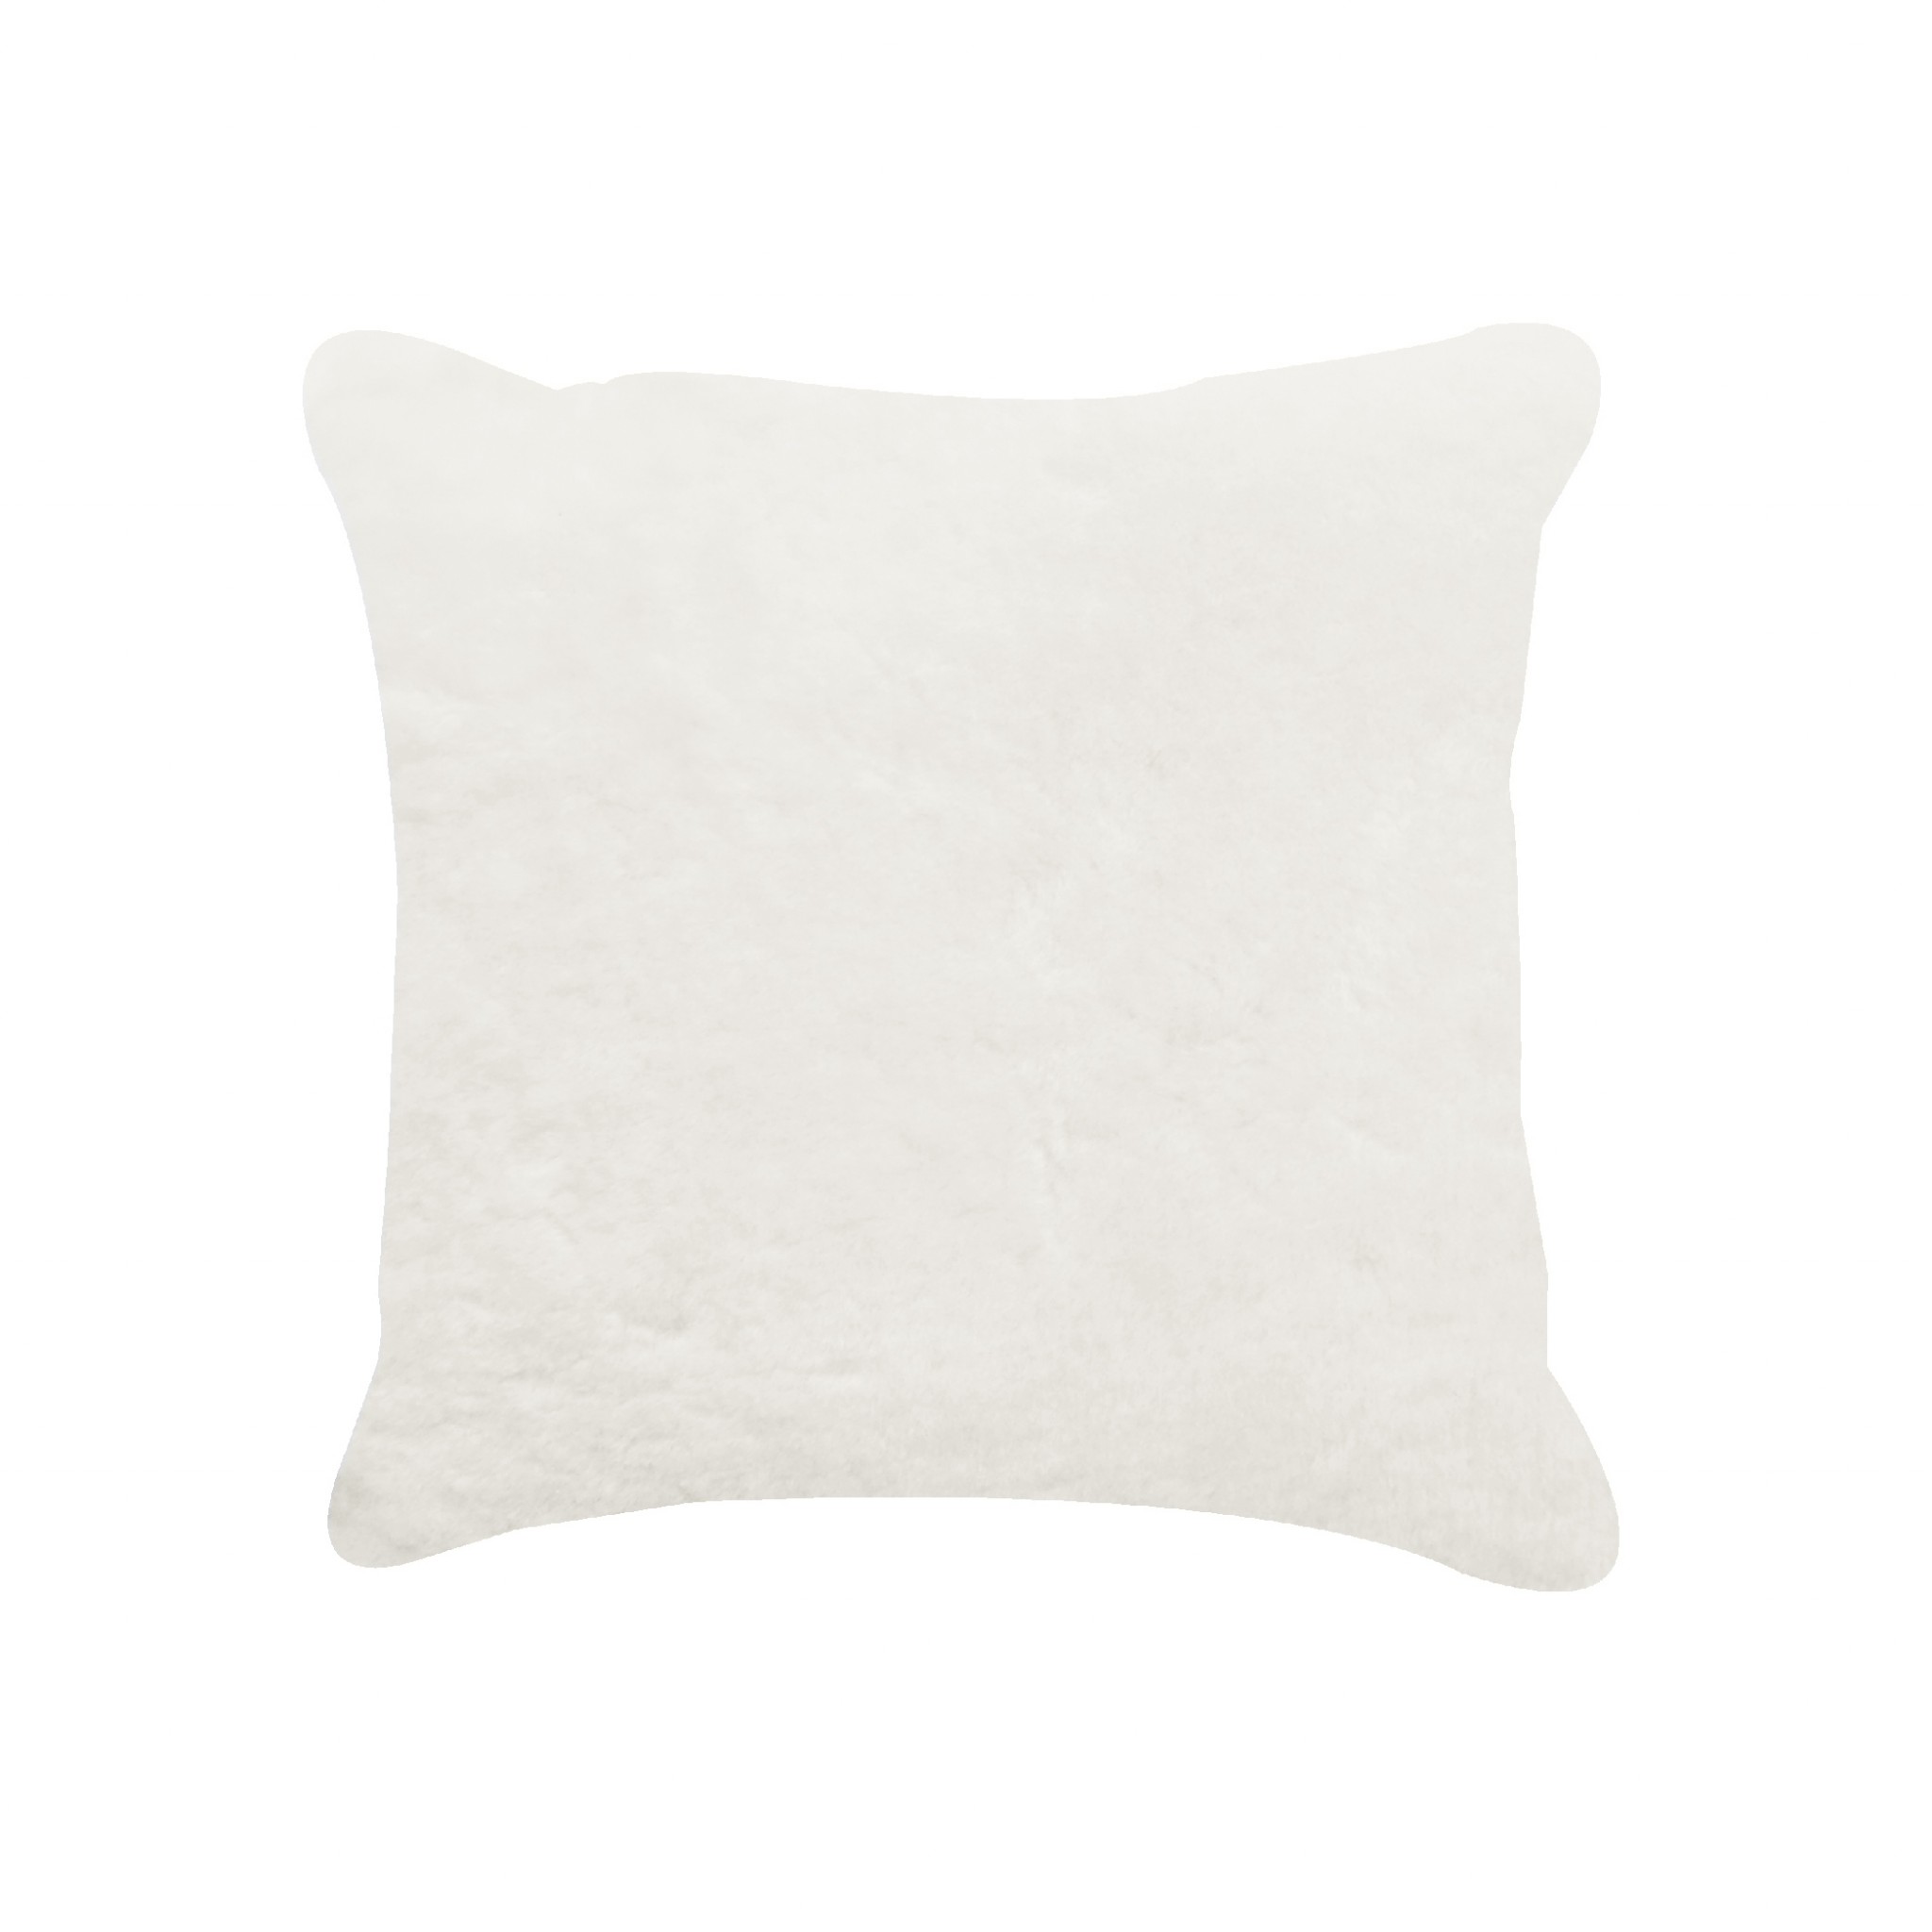 18" x 18" x 5" Natural Sheepskin - Pillow